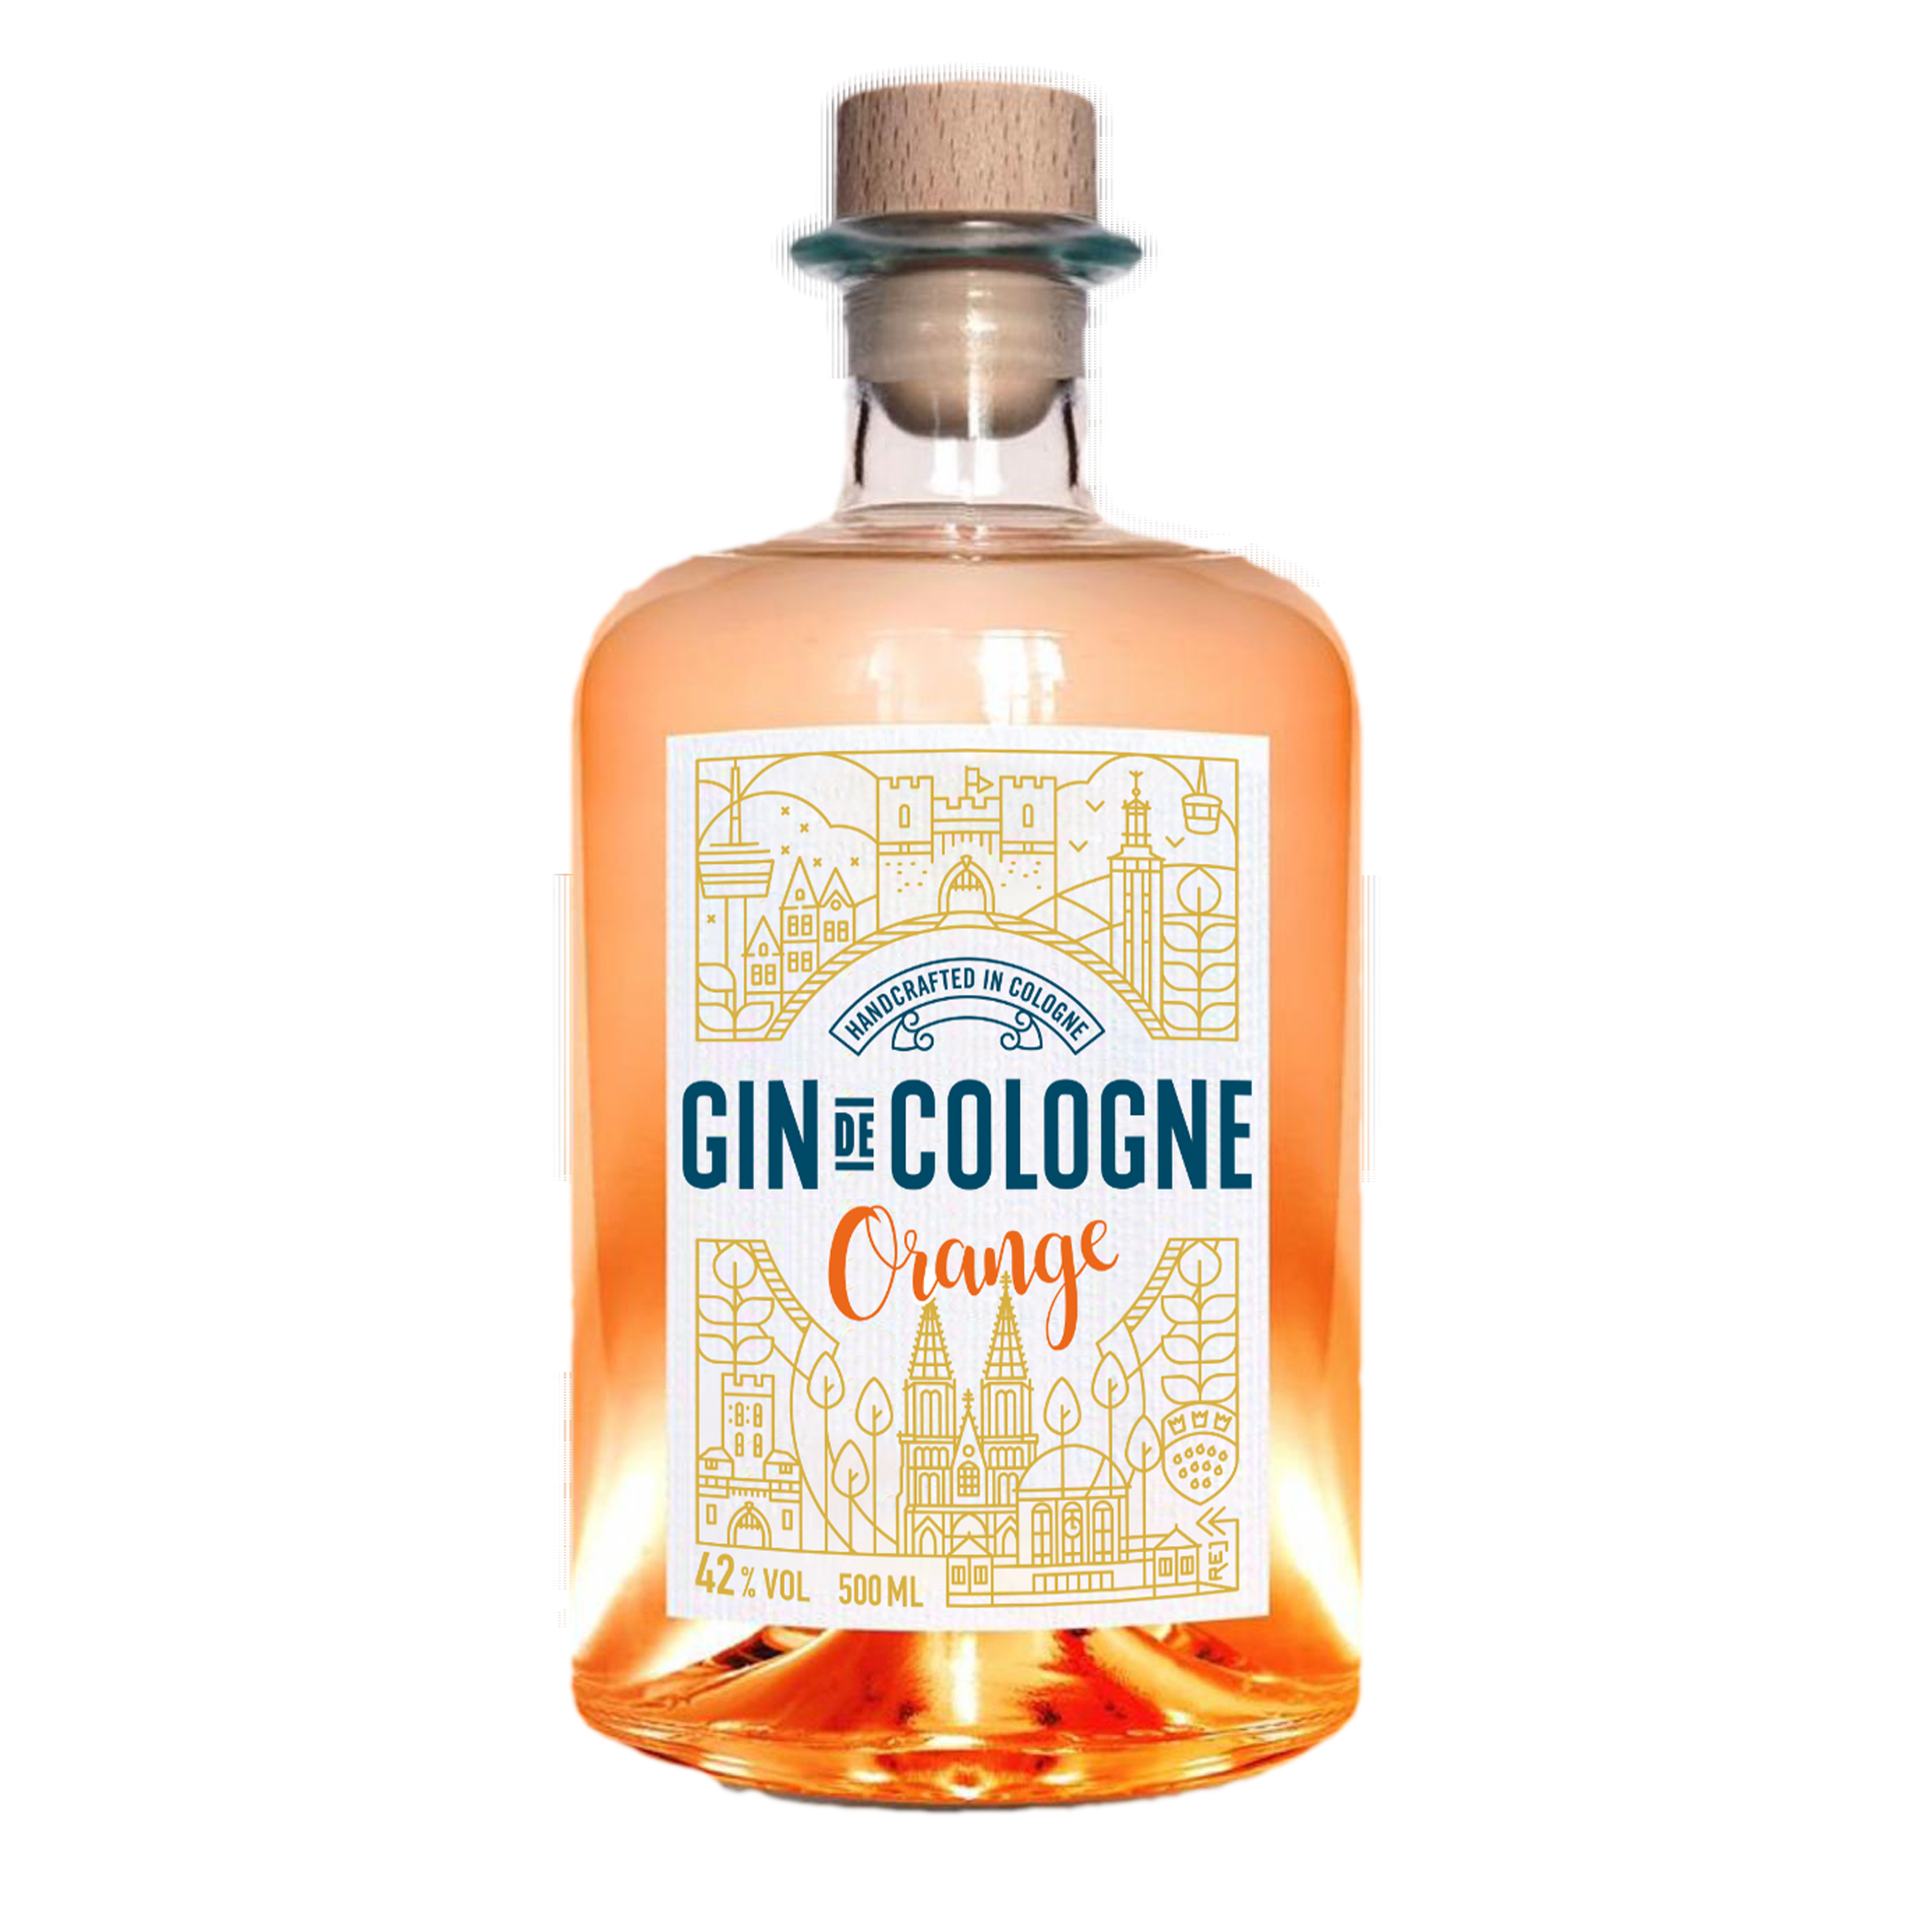 Gin de Cologne Orange 0,5l 42%vol